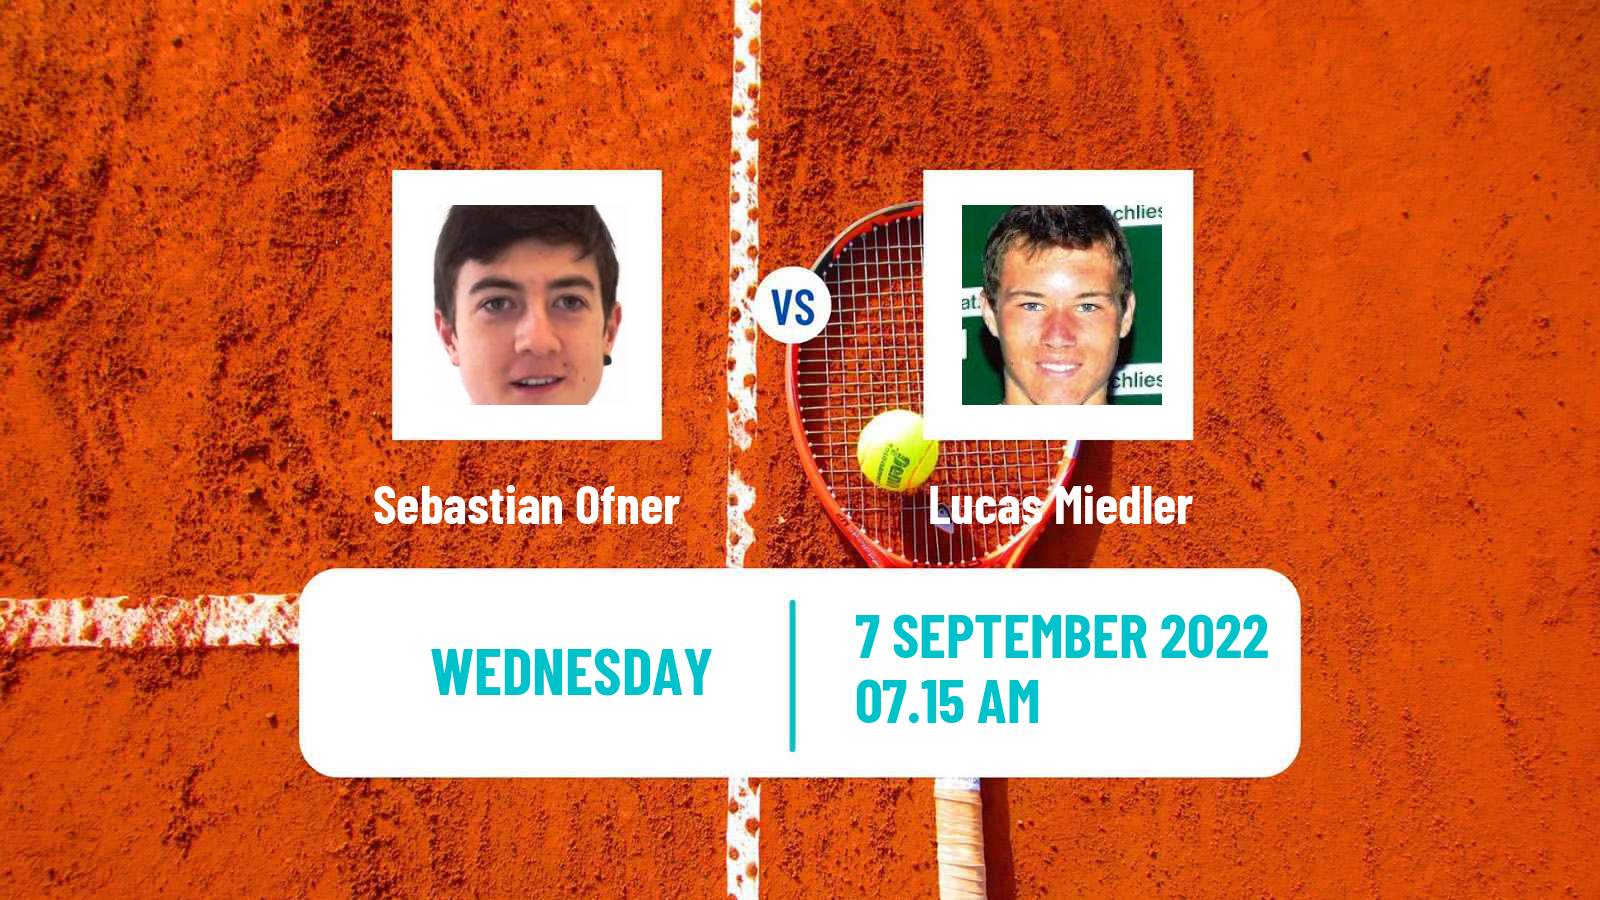 Tennis ATP Challenger Sebastian Ofner - Lucas Miedler